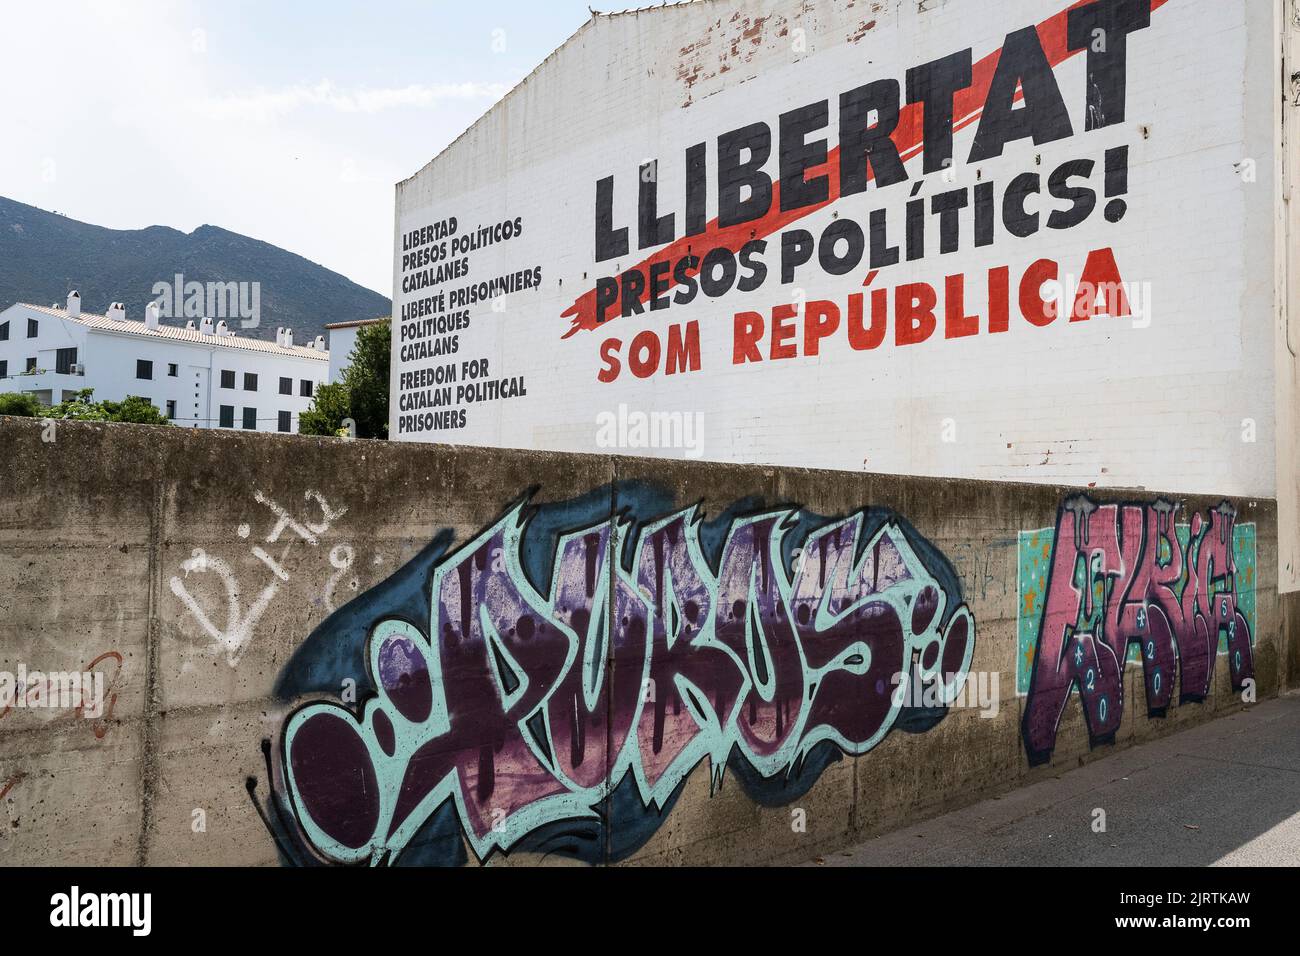 Spanien, Cadaques: Slogan an einer Wand, 'Llibertat presos Politik ! Som Republica', entlässt politische Gefangene, wir sind eine republik Stockfoto